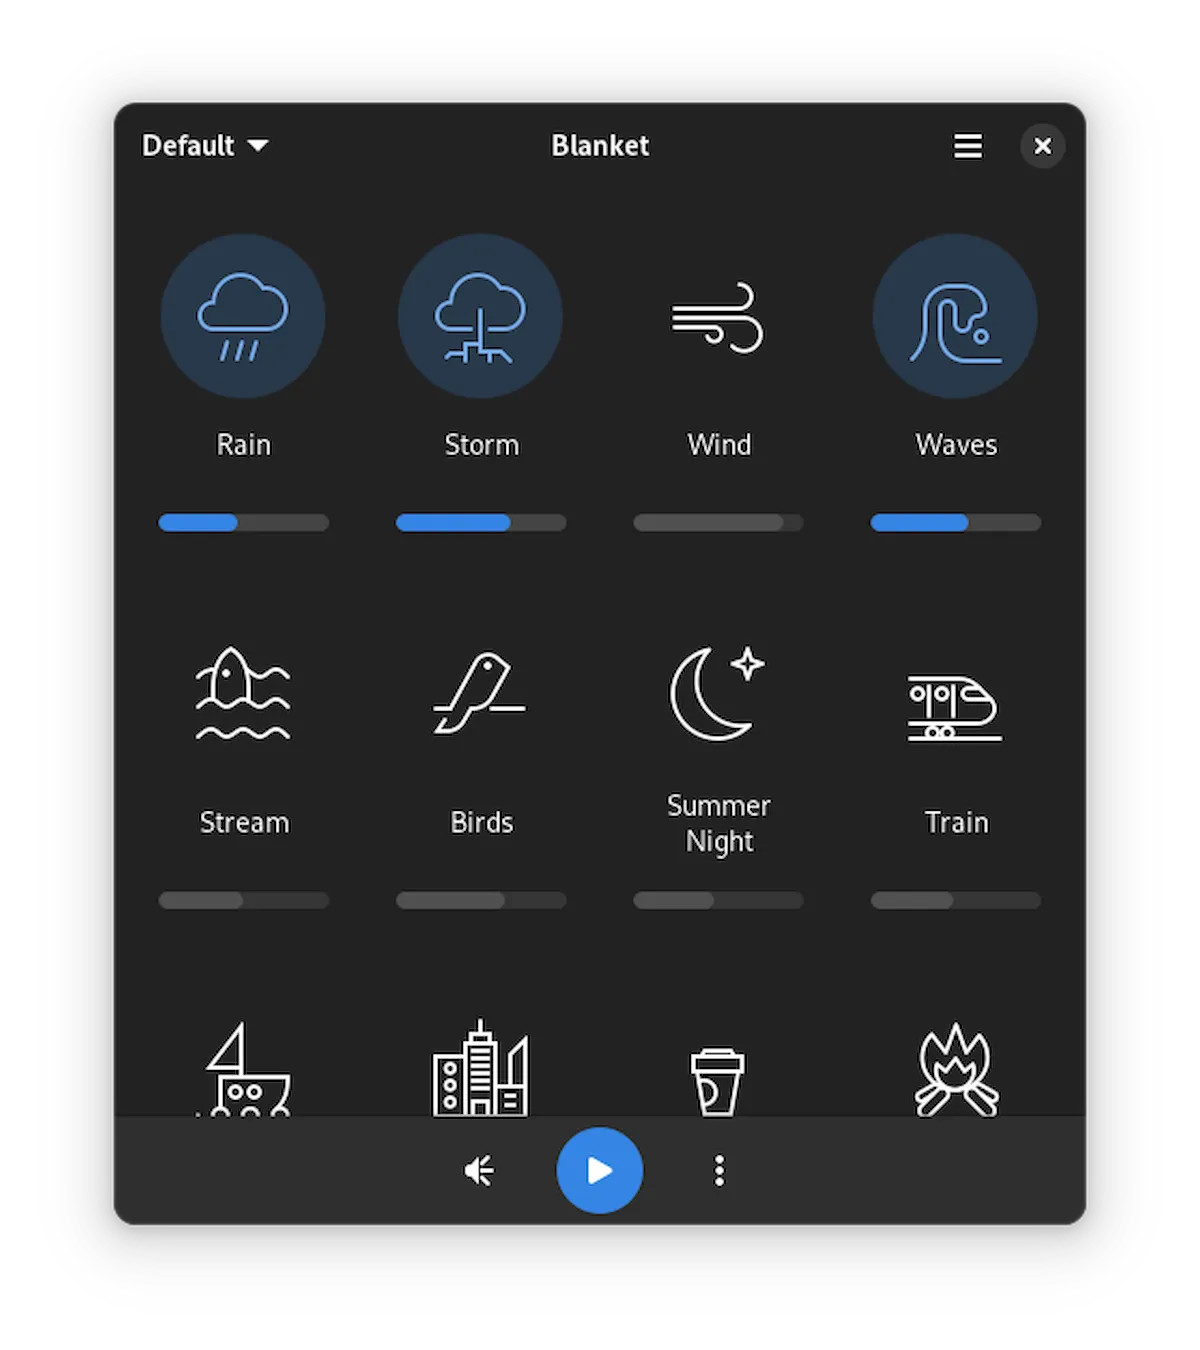 Blanket 0.7.0 lançado com um novo visual calmante, e mais